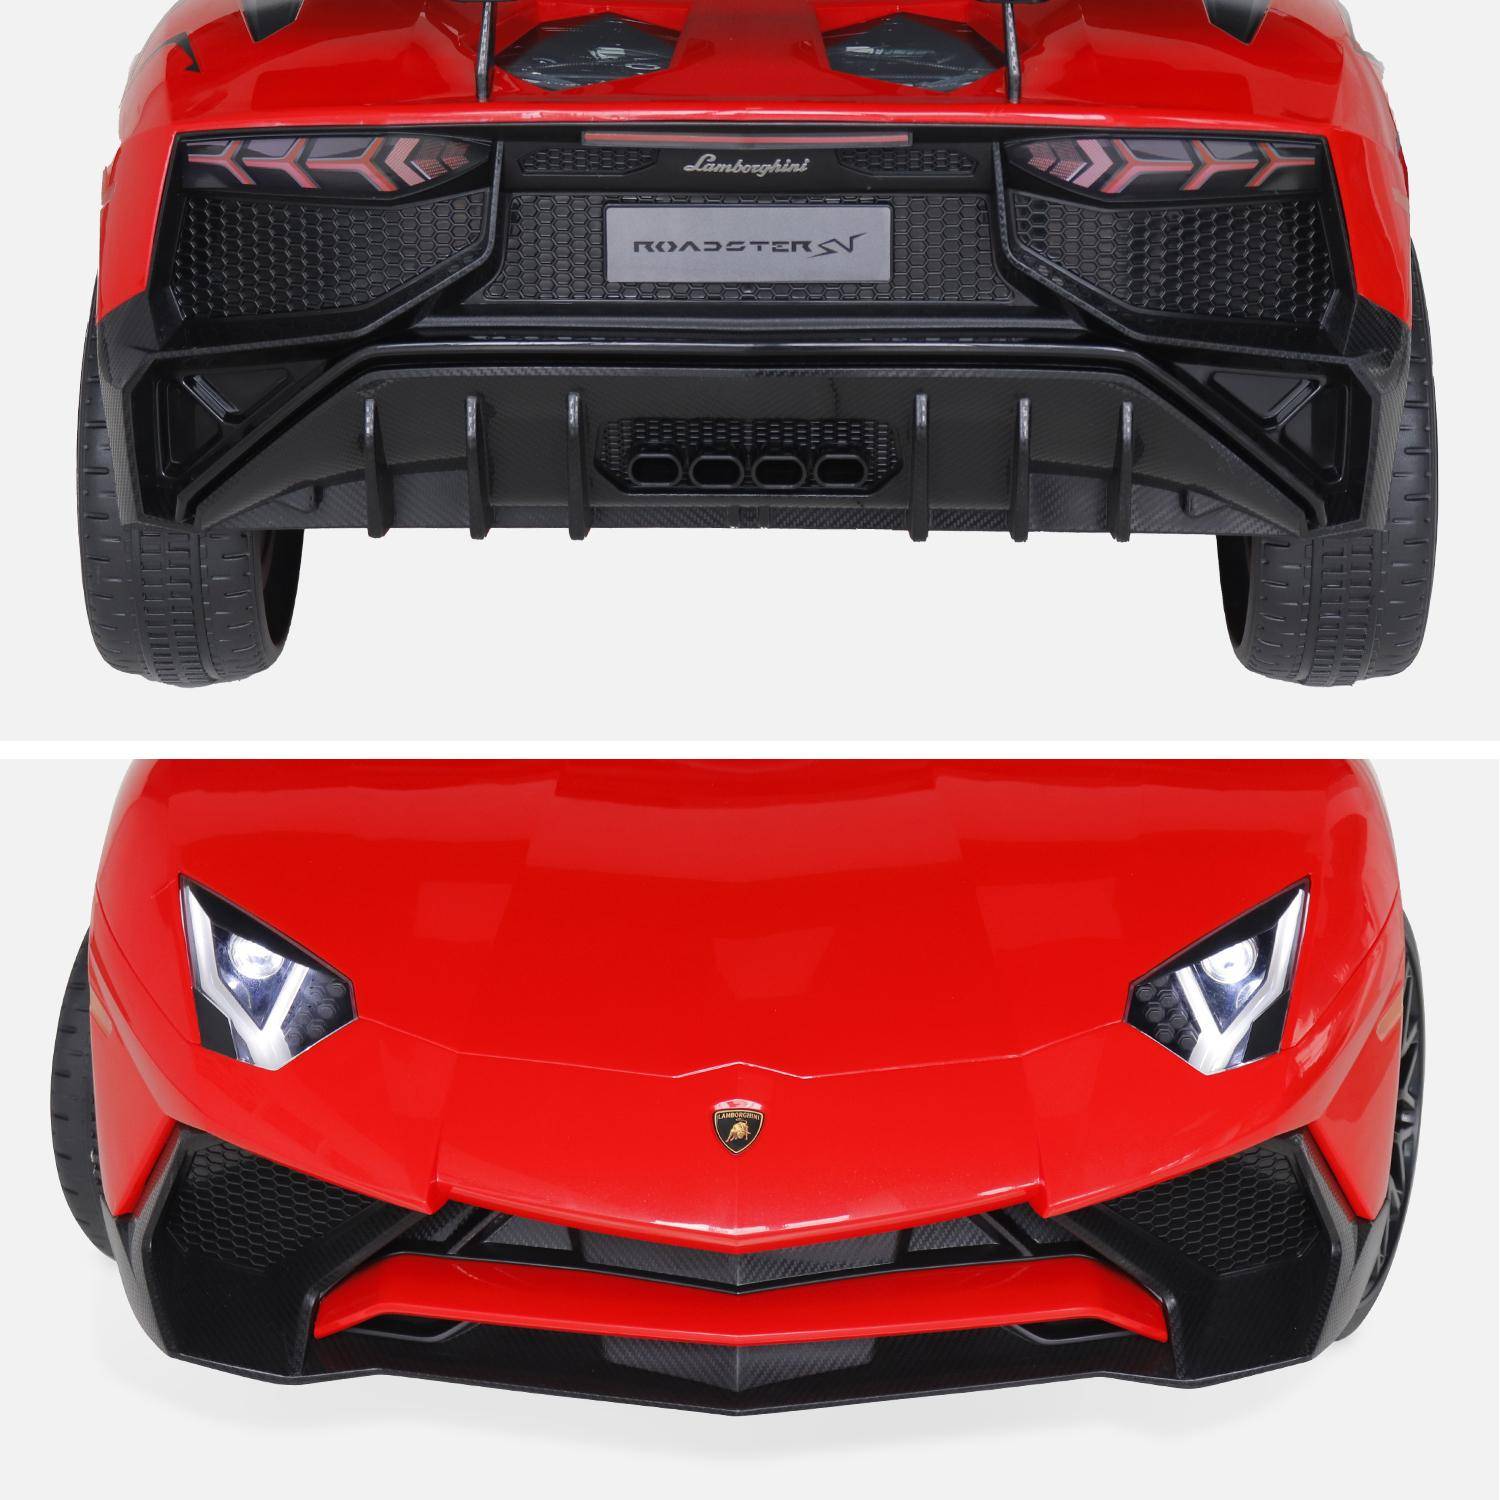 12V Lamborghini elektrische kinderauto, rood, 1 zitplaats, met autoradio, afstandsbediening, MP3, USB-poort en koplampen. Snelle levering, 2 jaar garantie.,sweeek,Photo7